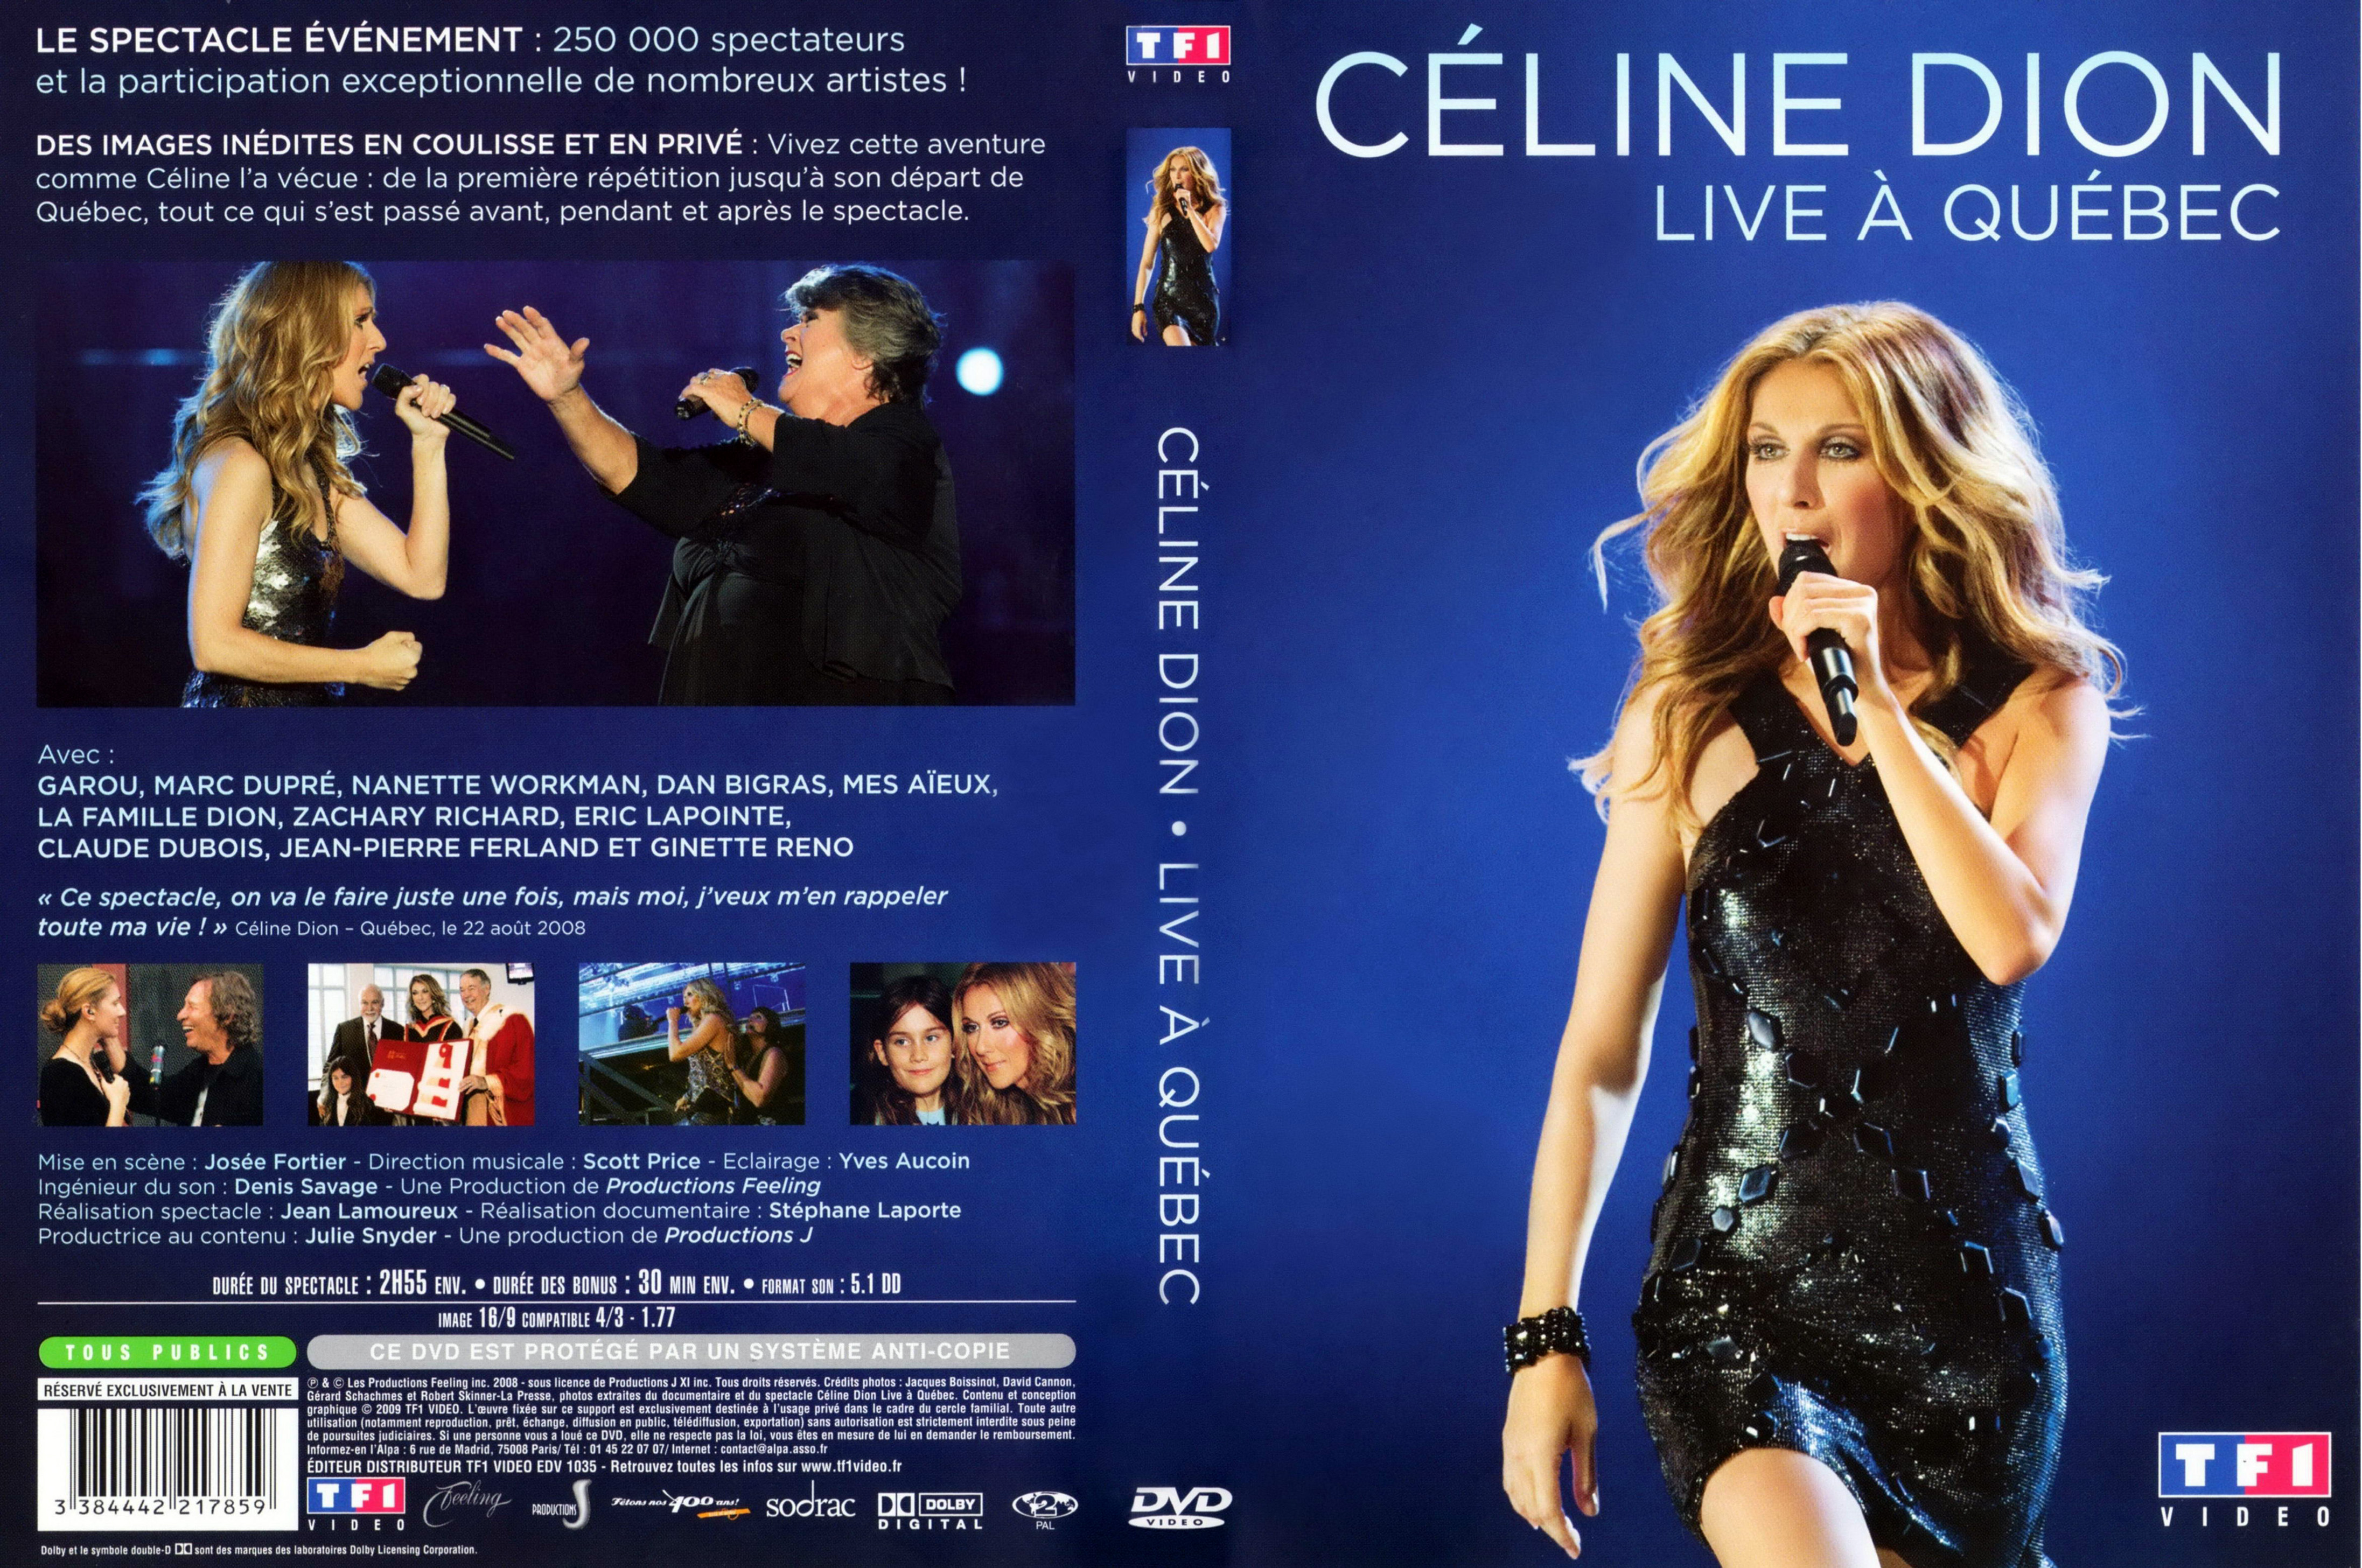 Celine Dion Live